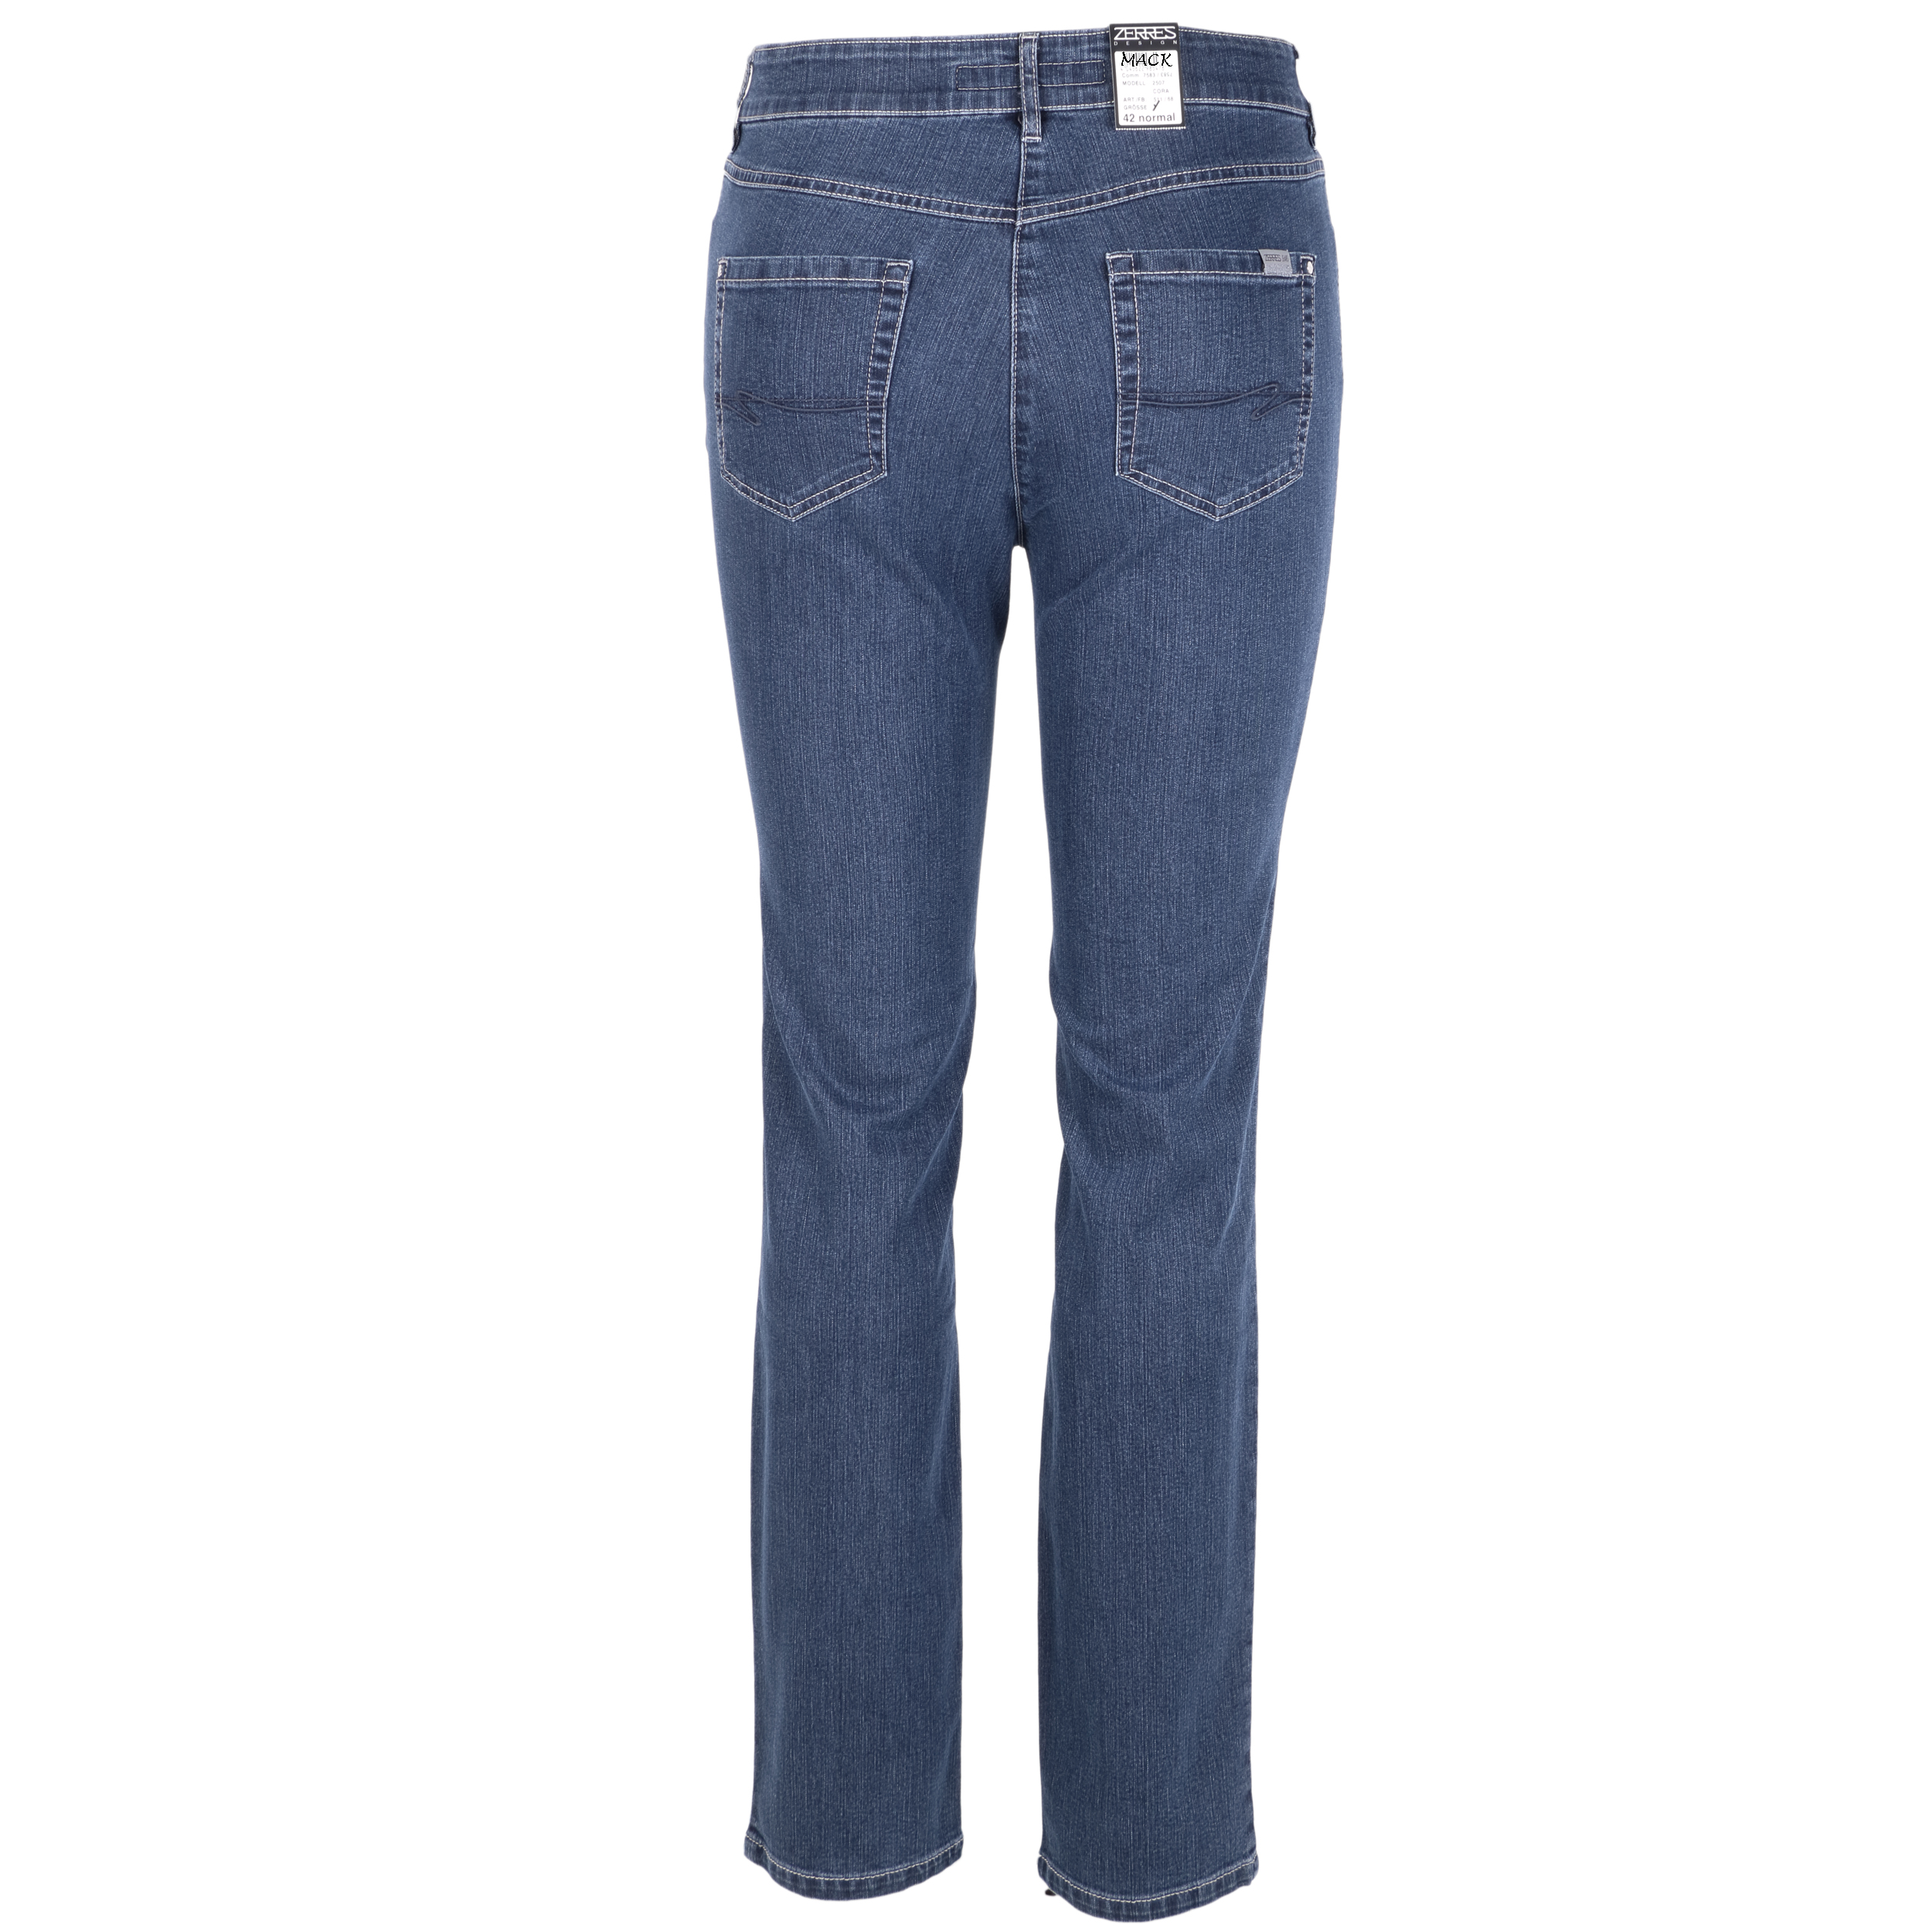 Zerres Damen Jeans Cora comfort S 46 blau